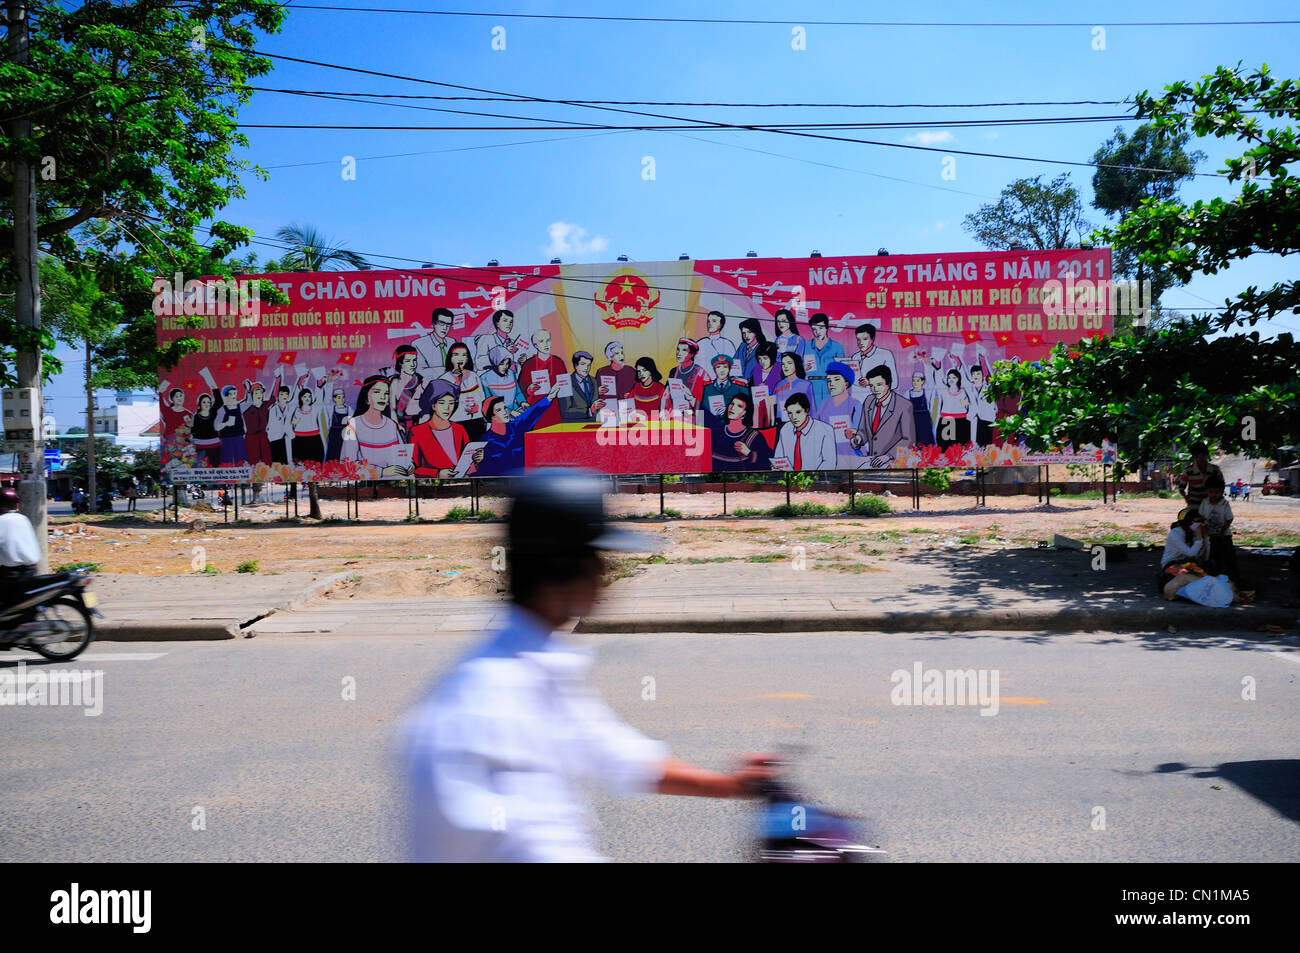 Kommunistischen Billboard die Menschen ermutigen, n bevorstehende Wahlen stimmen. Kon Tum, North Central Highlands, Vietnam Stockfoto